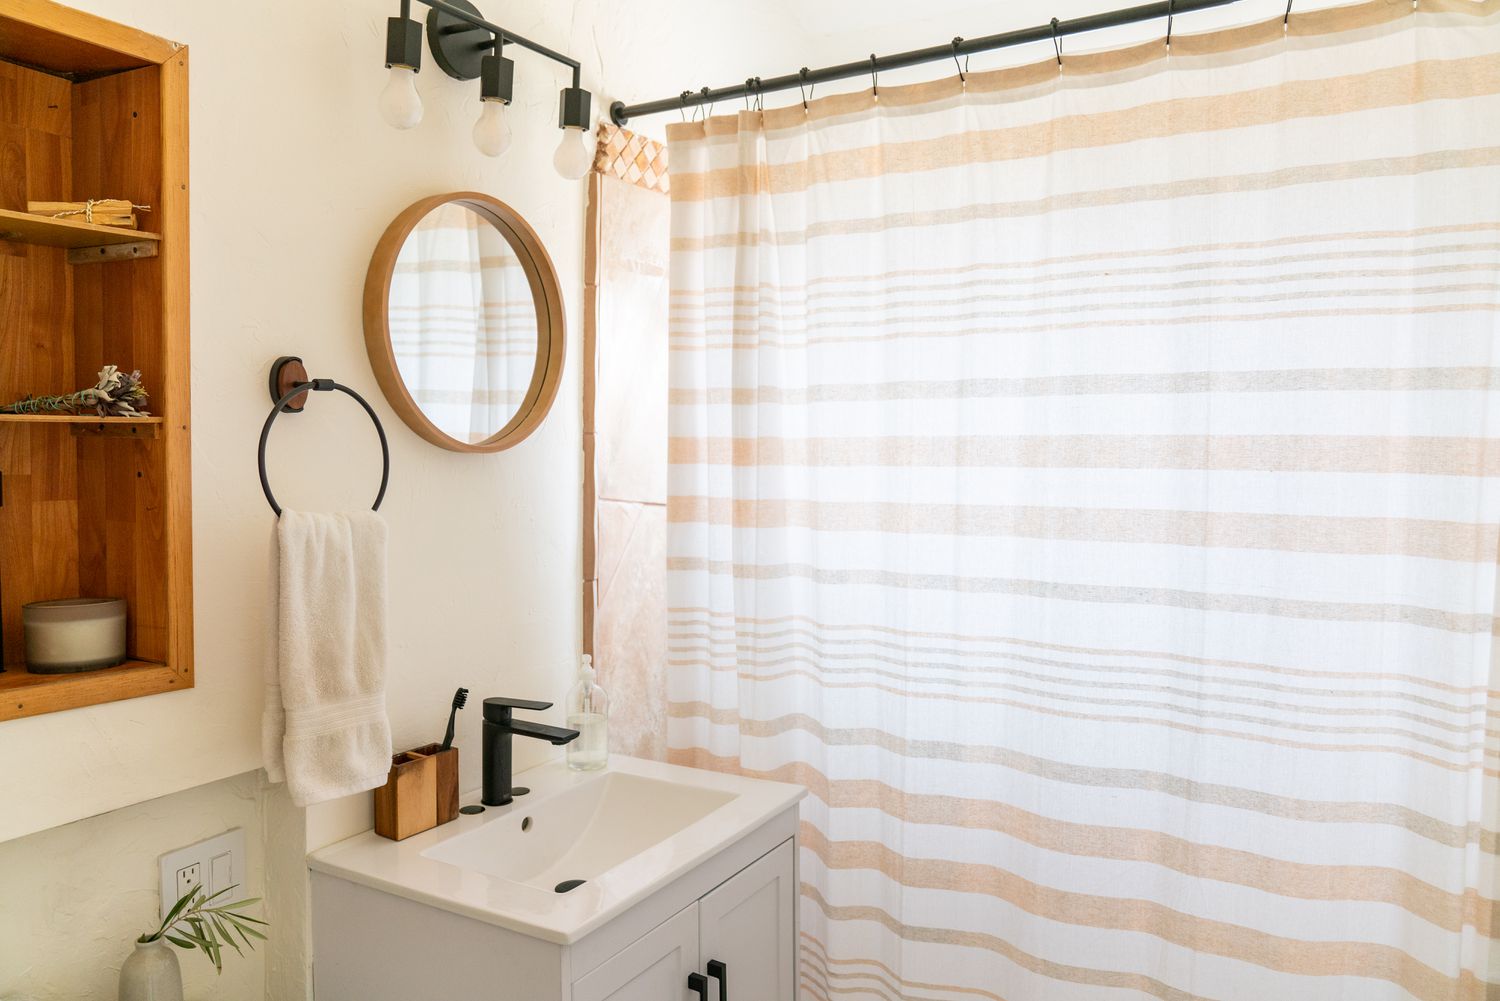 Baño pequeño con espejo redondo pequeño junto a cortina de ducha blanca y tostada